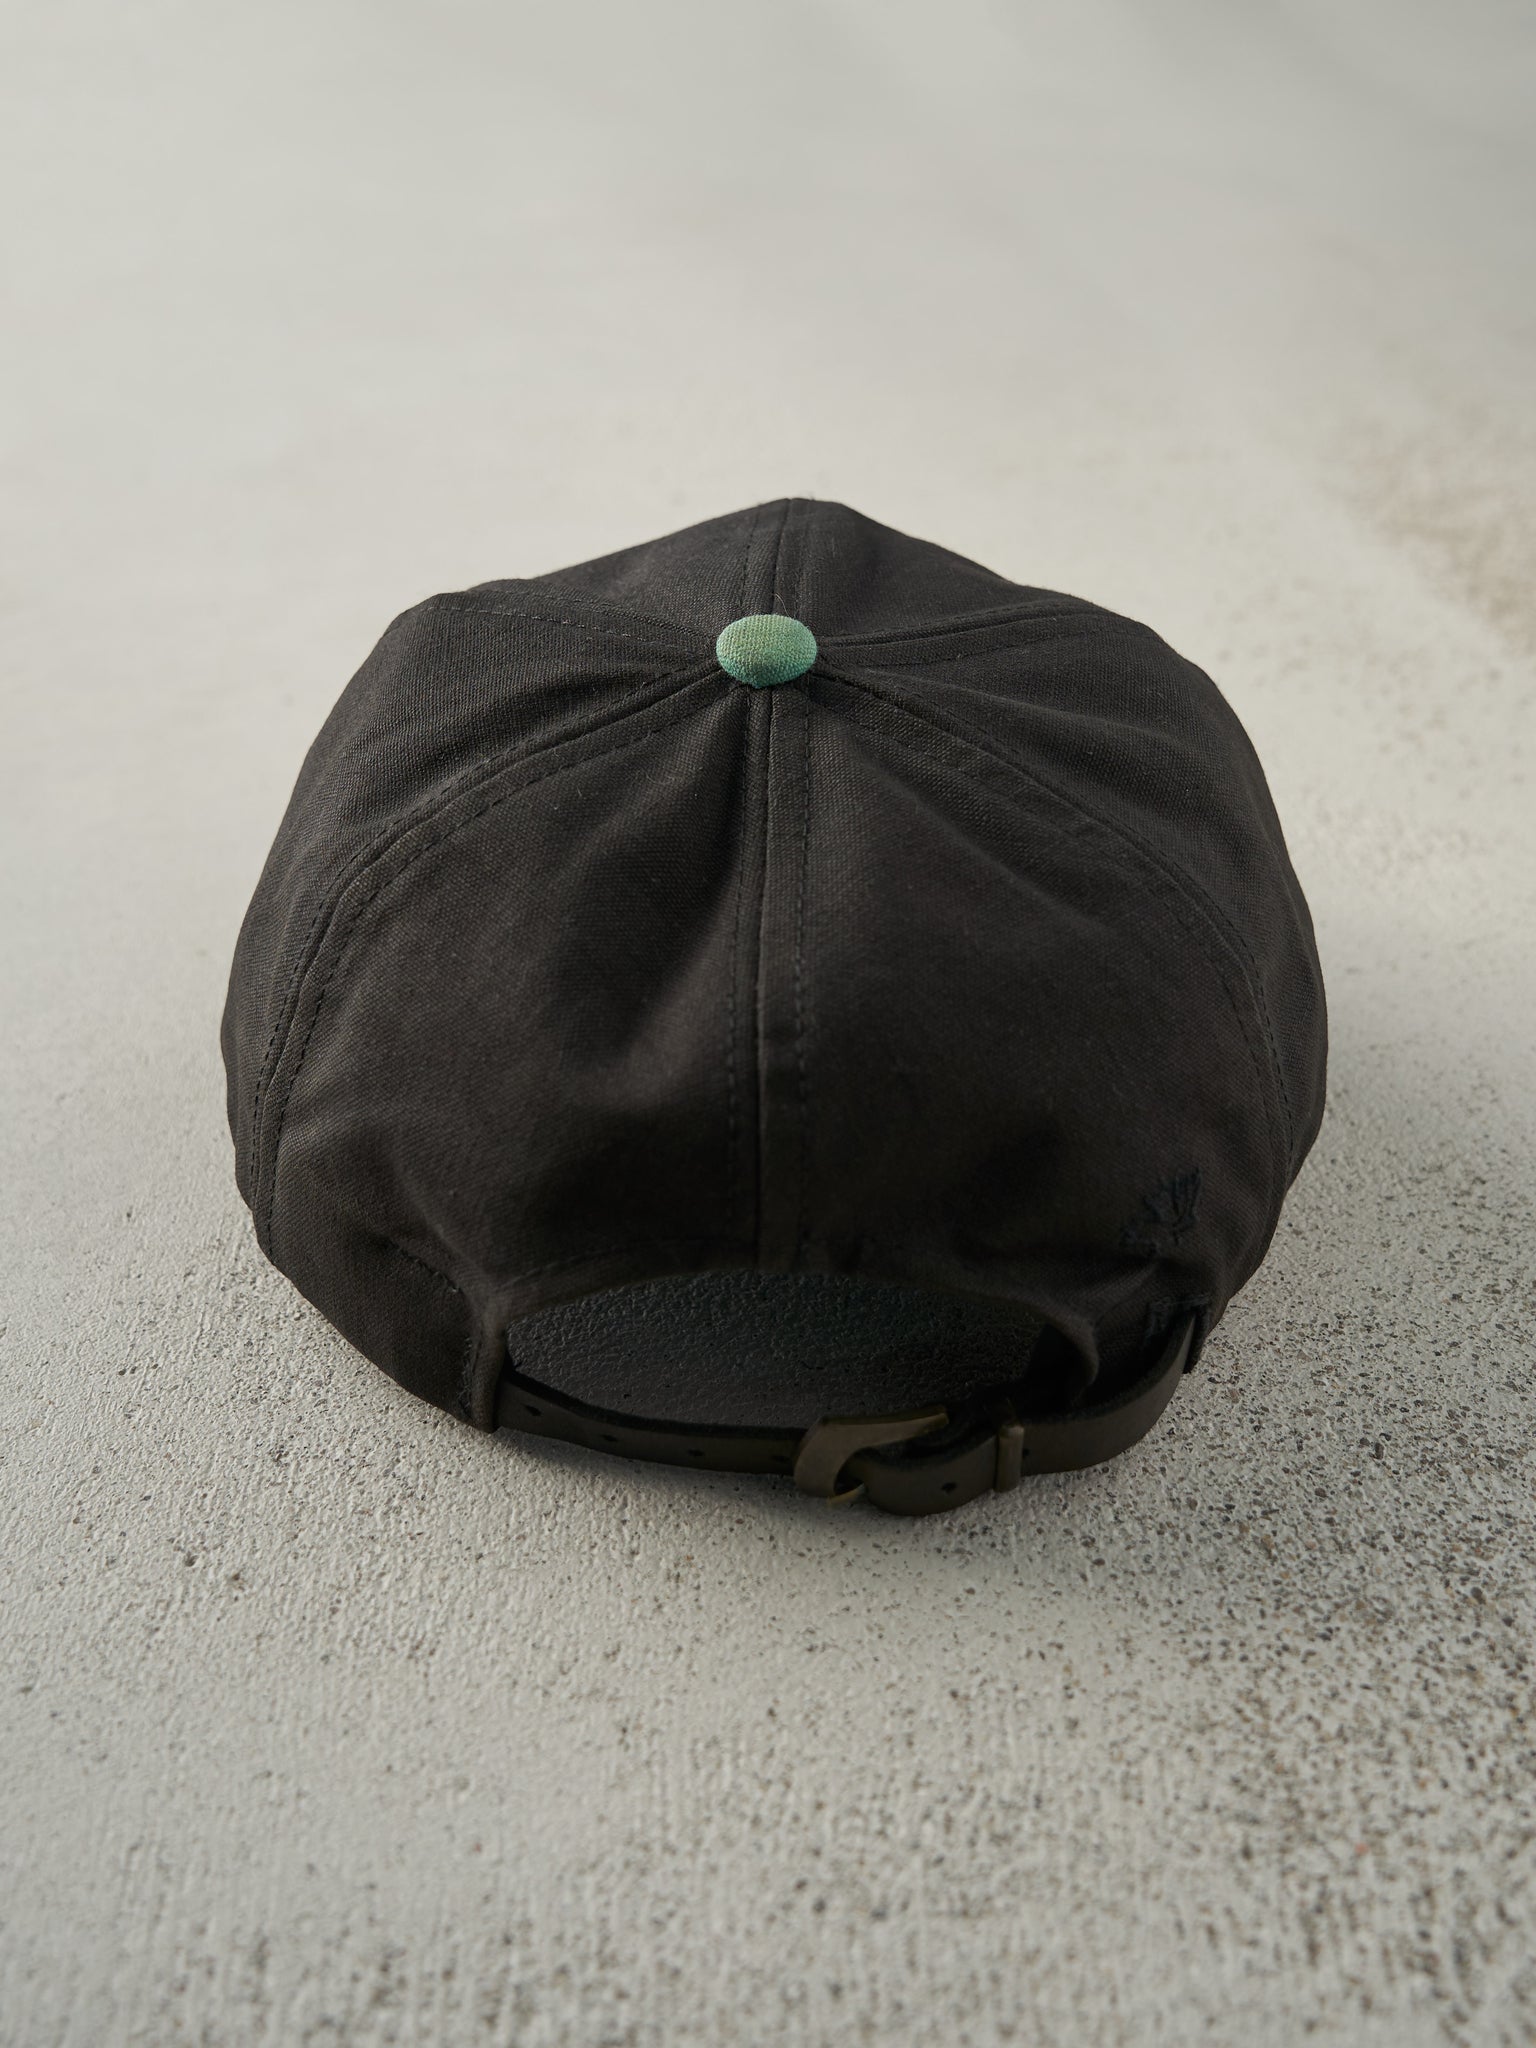 Vintage 90s Black & Green Embroidered Wind River Leather Strap Back Hat